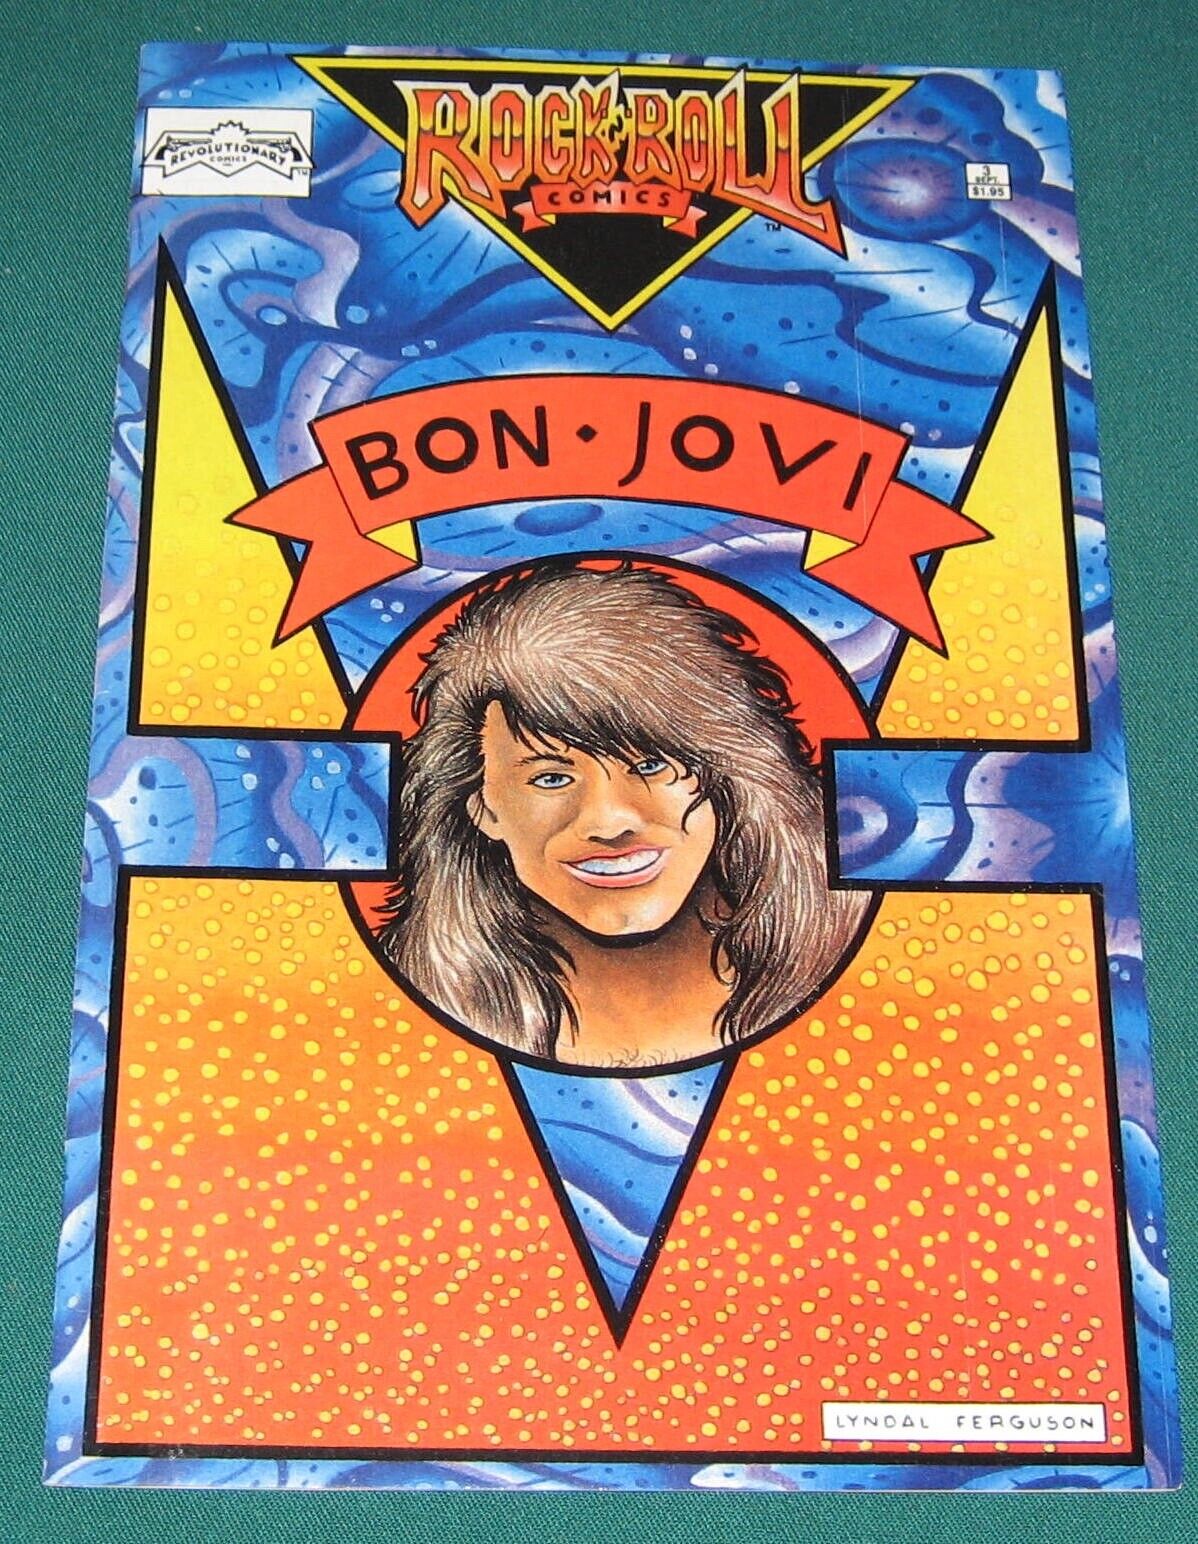 BON JOVI ROCK AND ROLL COMICS #3 1989 